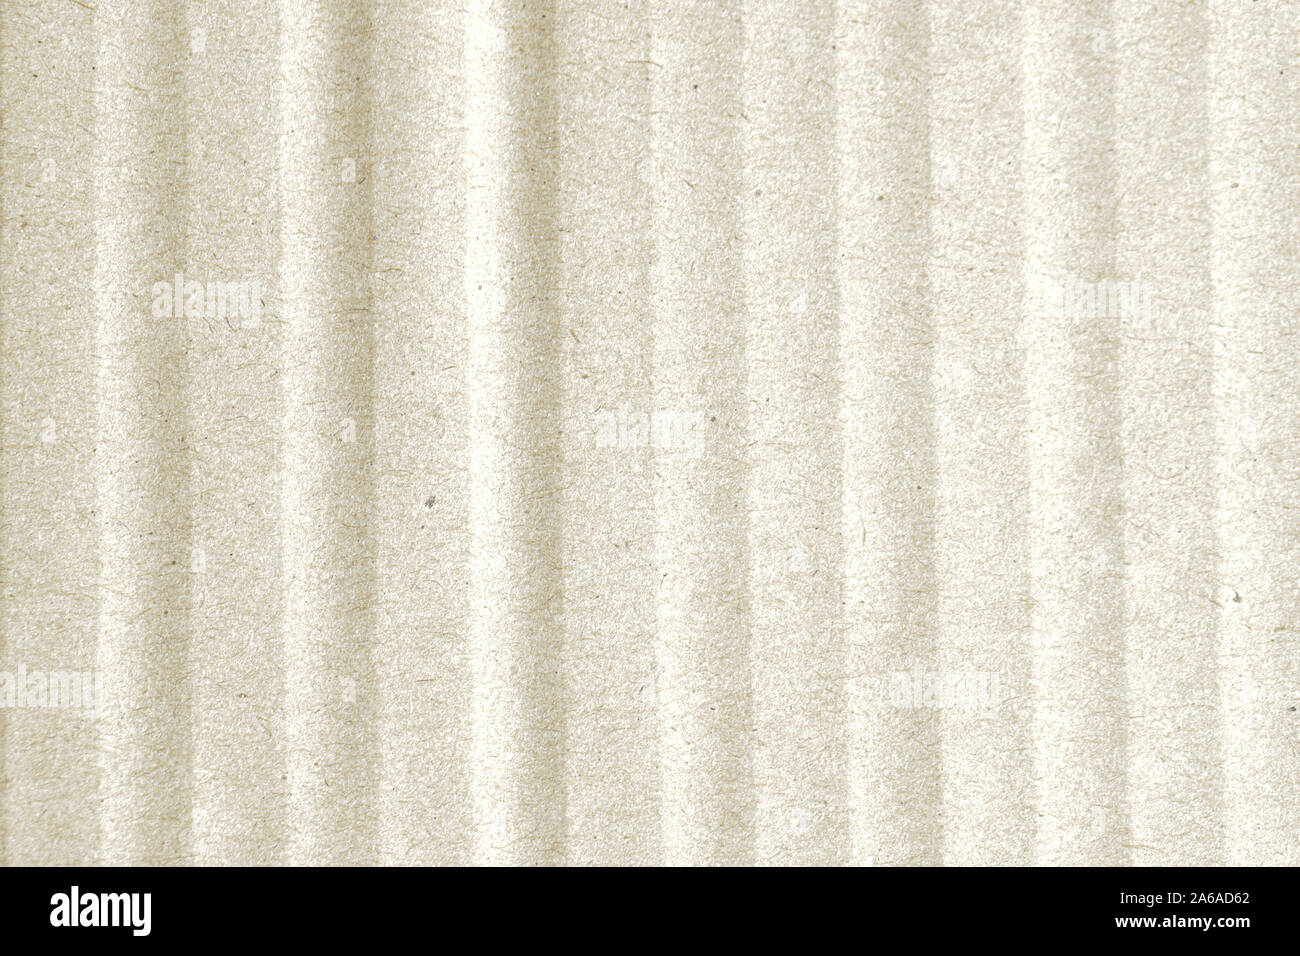 Texture de fond papier beige blanc light rough textured repéré copie vierge space Banque D'Images